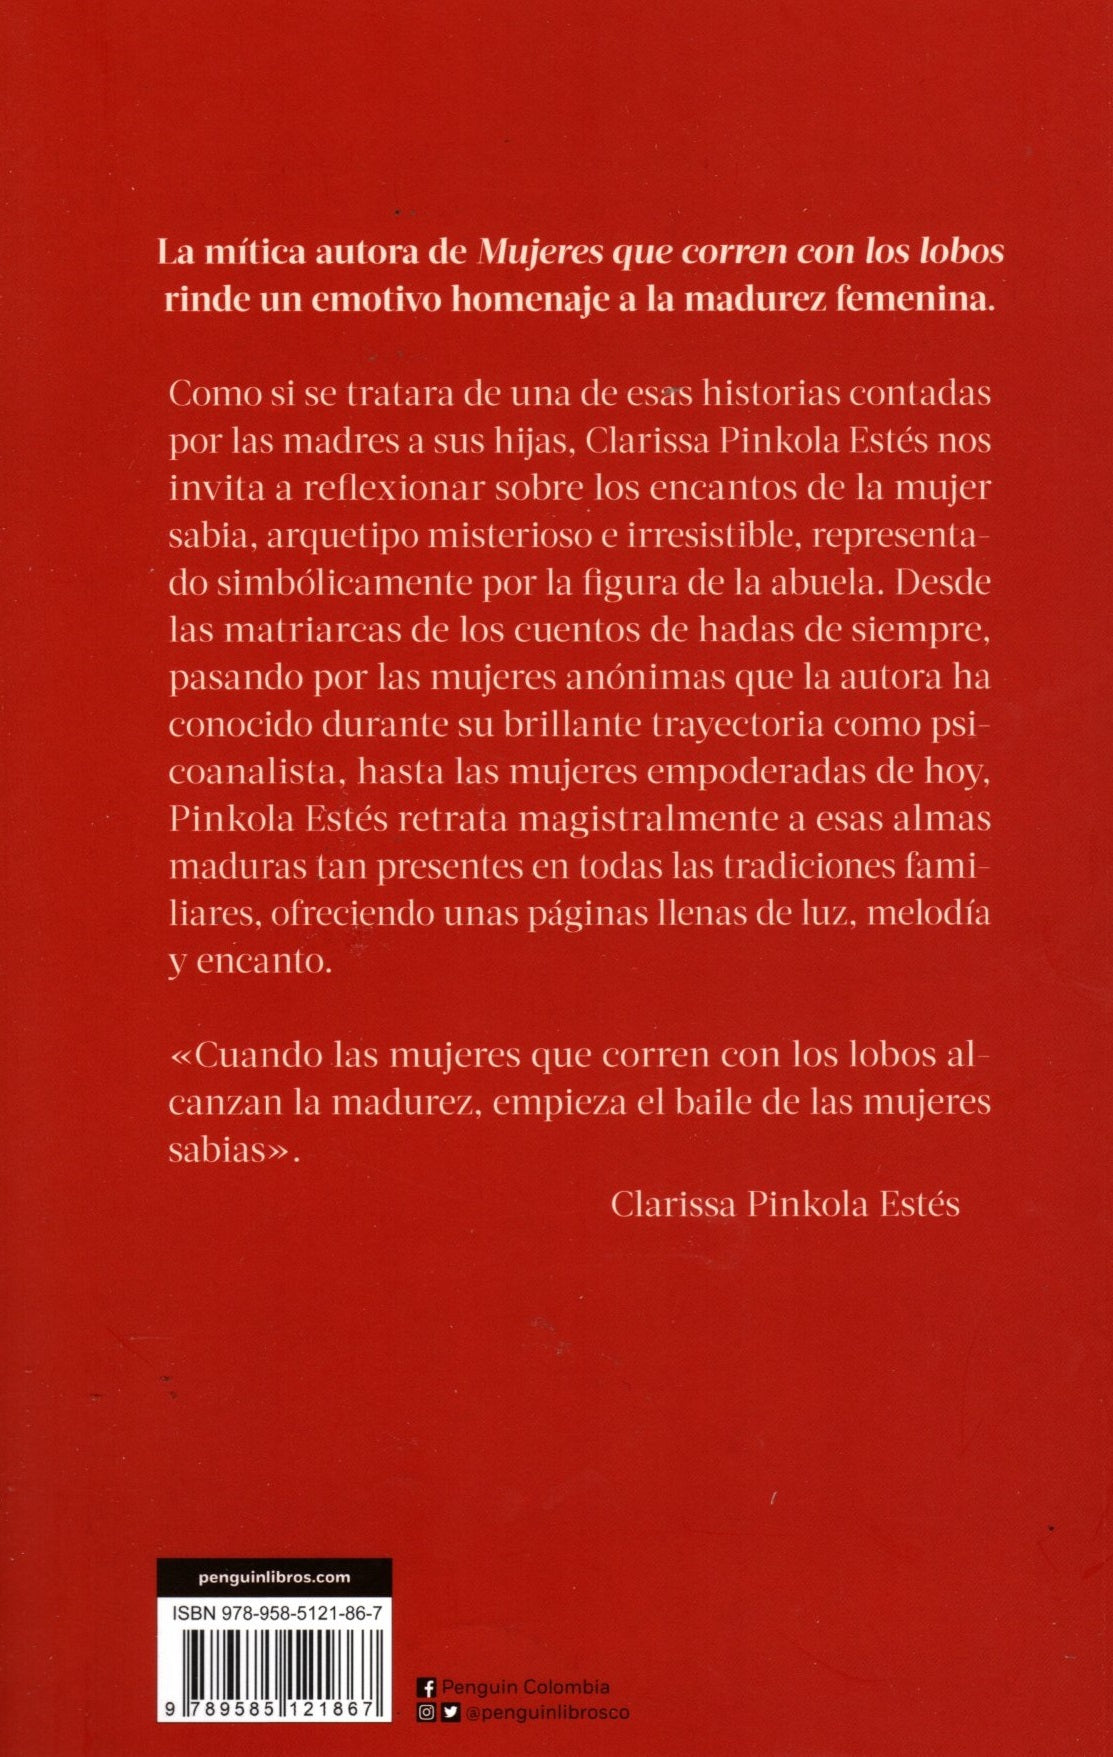 Libro Clarissa Pinkola Estés - El Baile De Las Mujeres Sabias